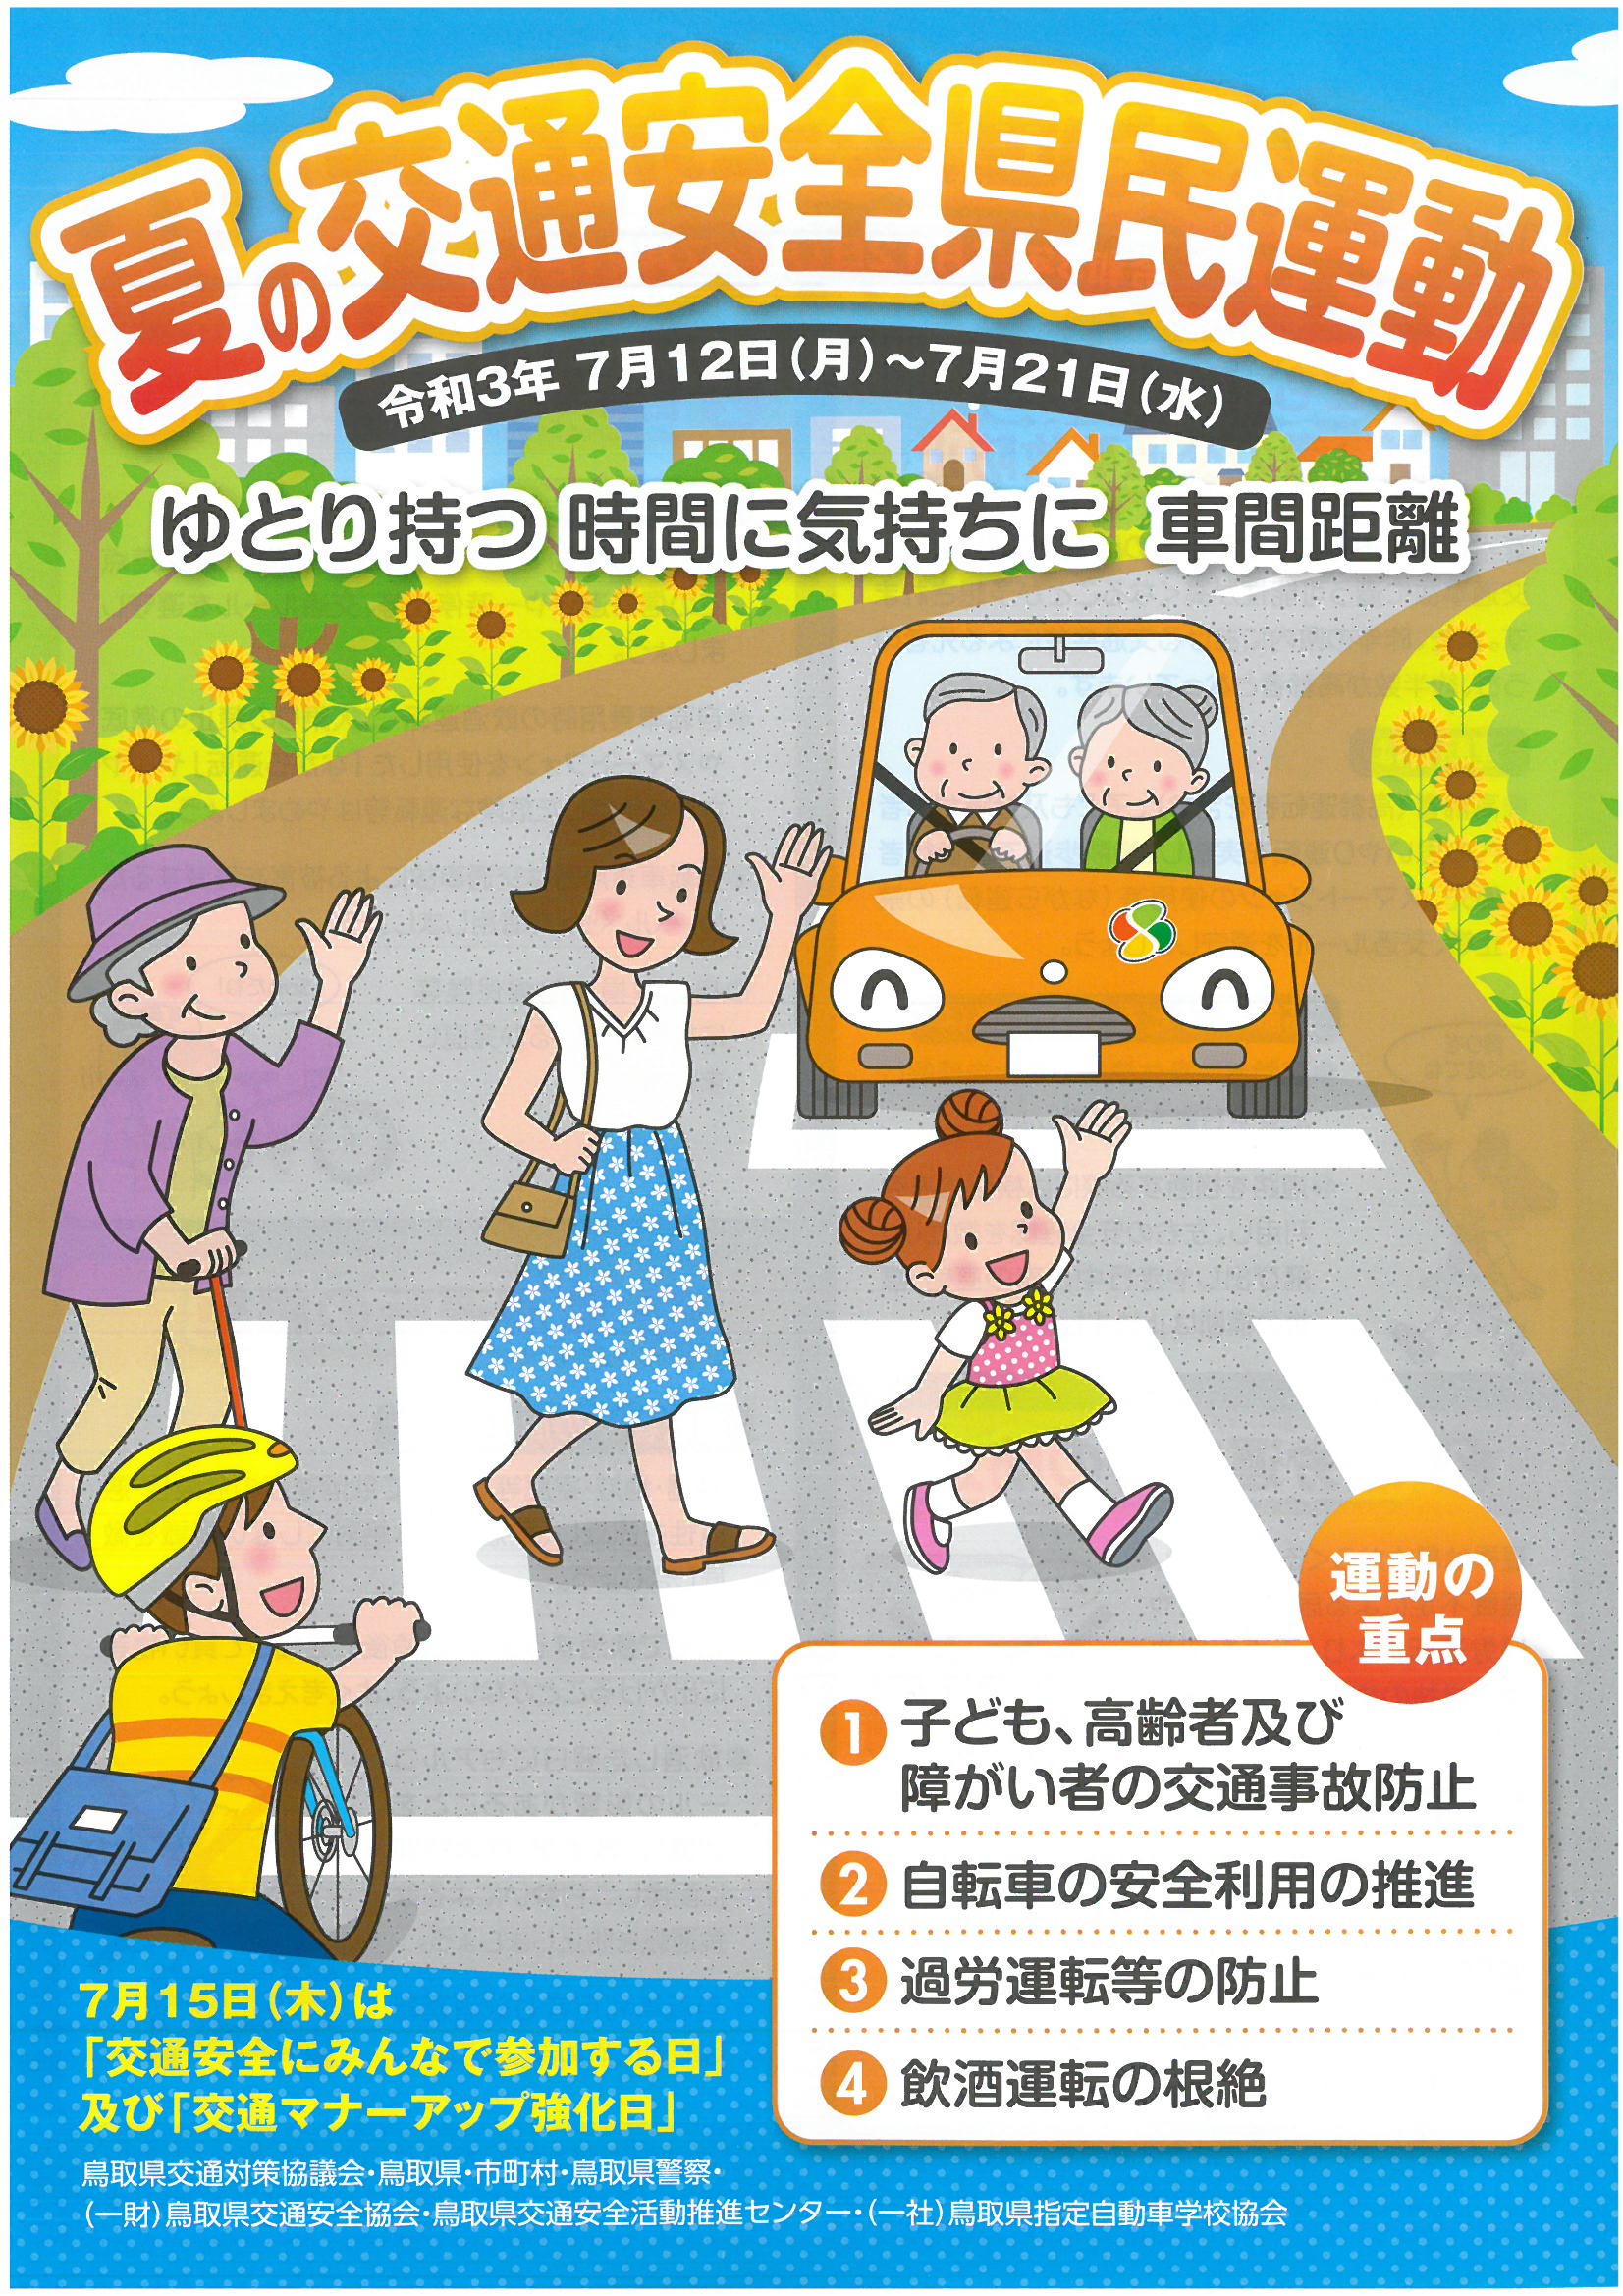 一般財団法人鳥取県交通安全協会 Blog Archive 夏の交通安全県民運動